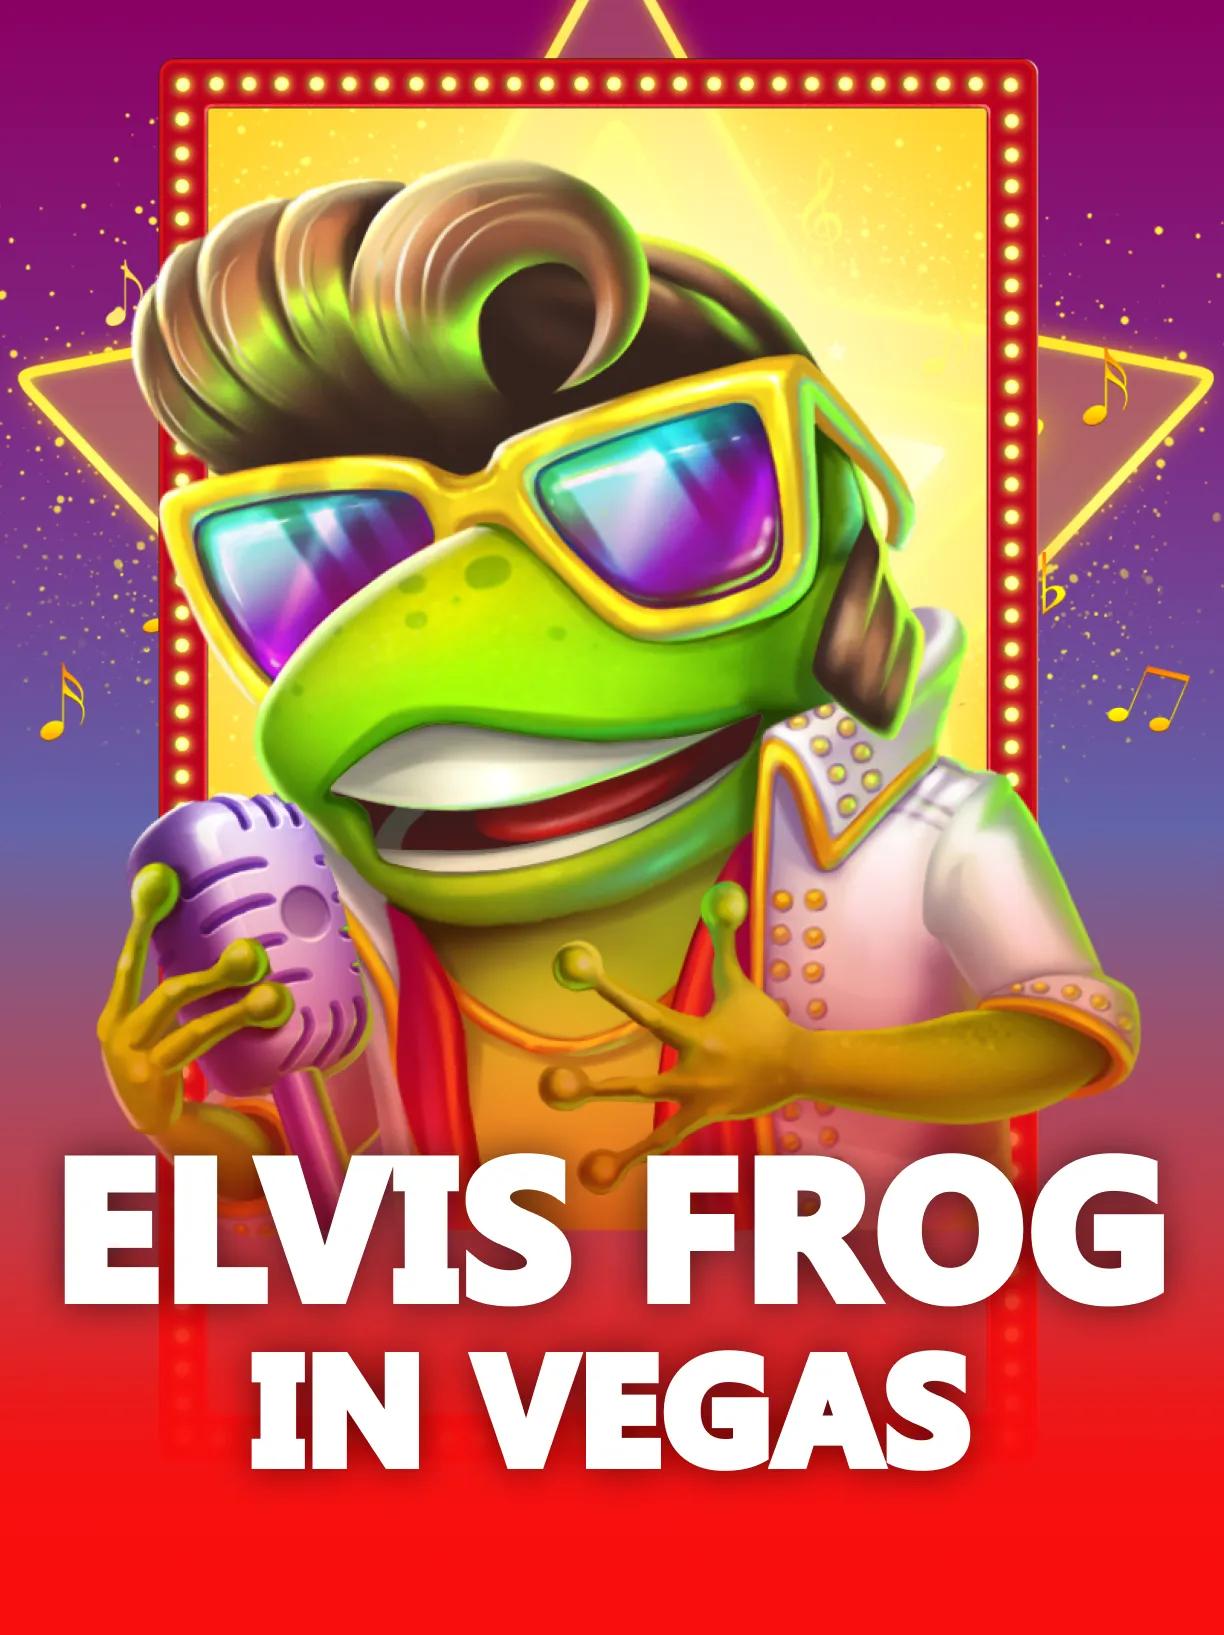 Elvis_Frog_in_Vegas_square.webp